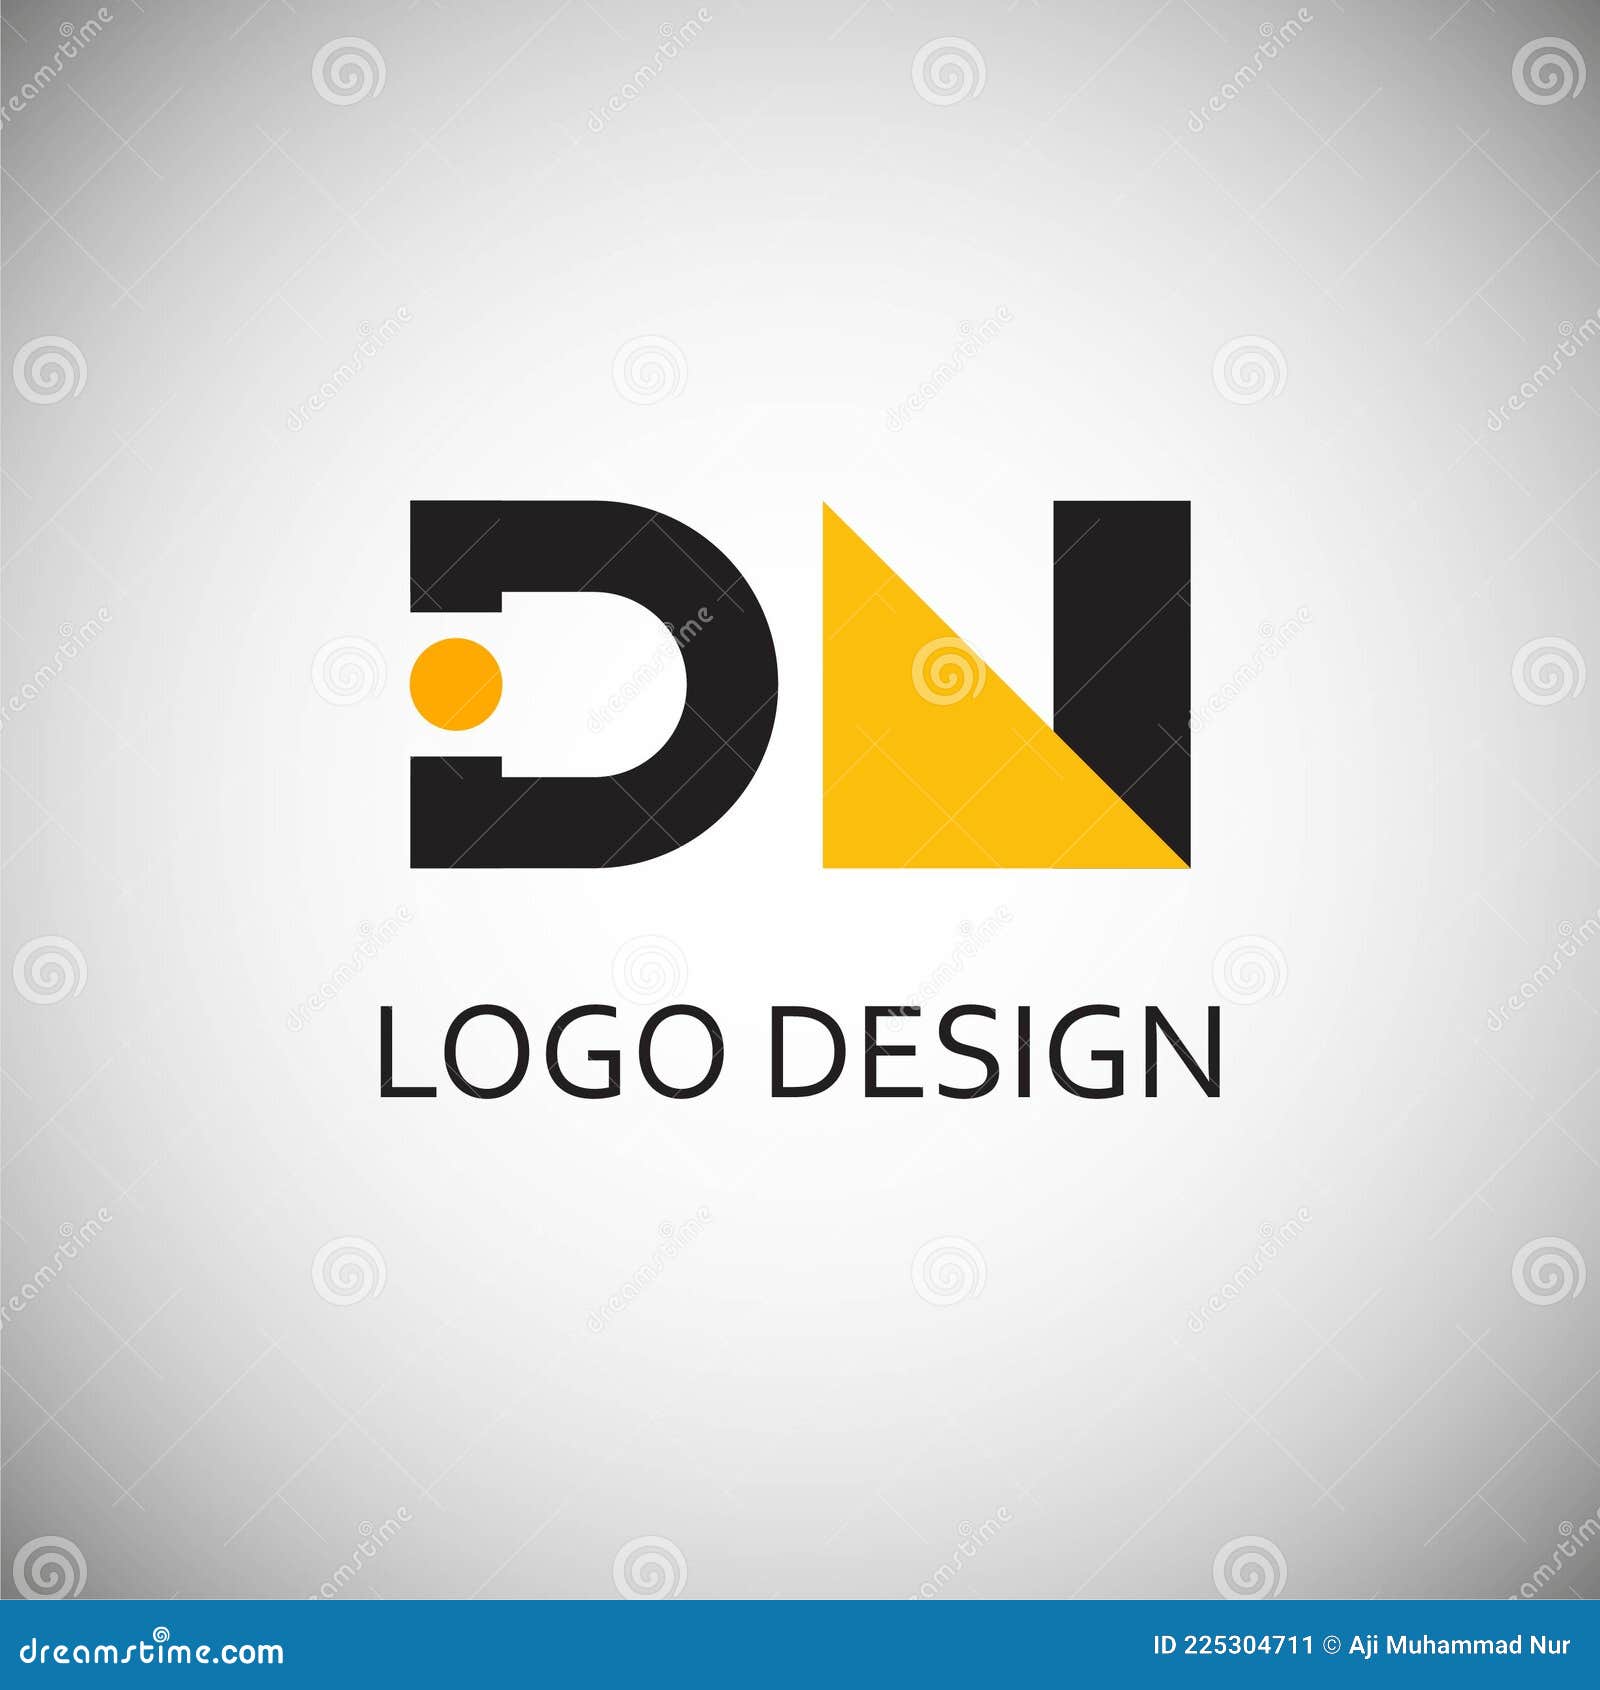 Modern, Upmarket, Tech Logo Design for 